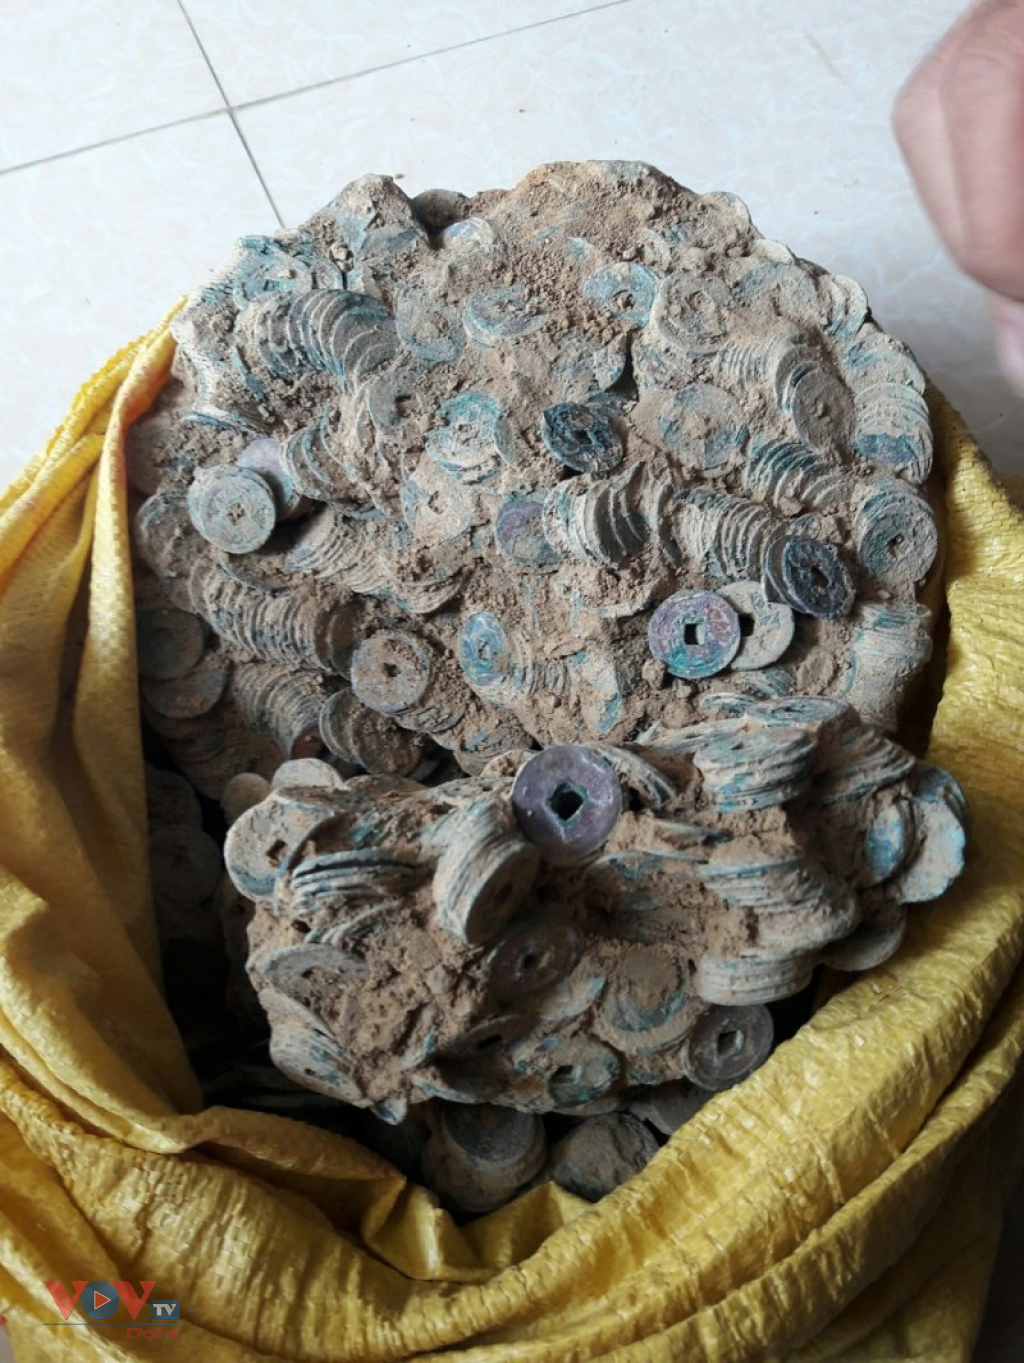 Quảng Trị: Phát hiện hũ tiền cổ nặng 27kg, niên đại cách đây 1.000 năm - Ảnh 1.